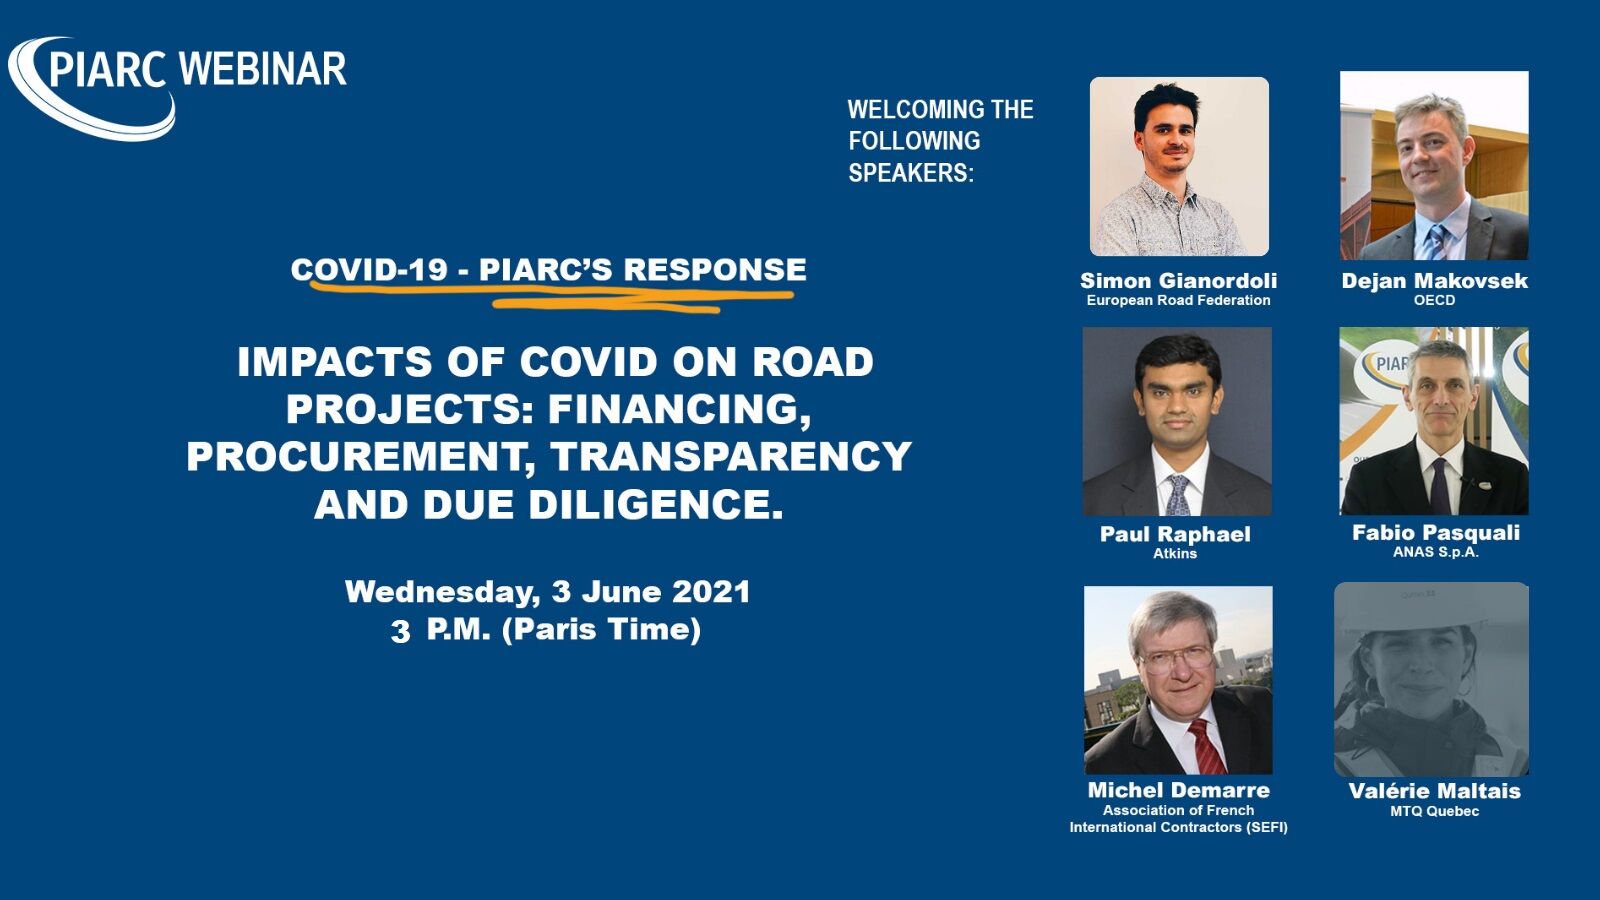 Inscrivez-vous dès maintenant : Le 3 juin est le prochain webinaire de PIARC sur l'impact du Covid-19 sur les projets routiers